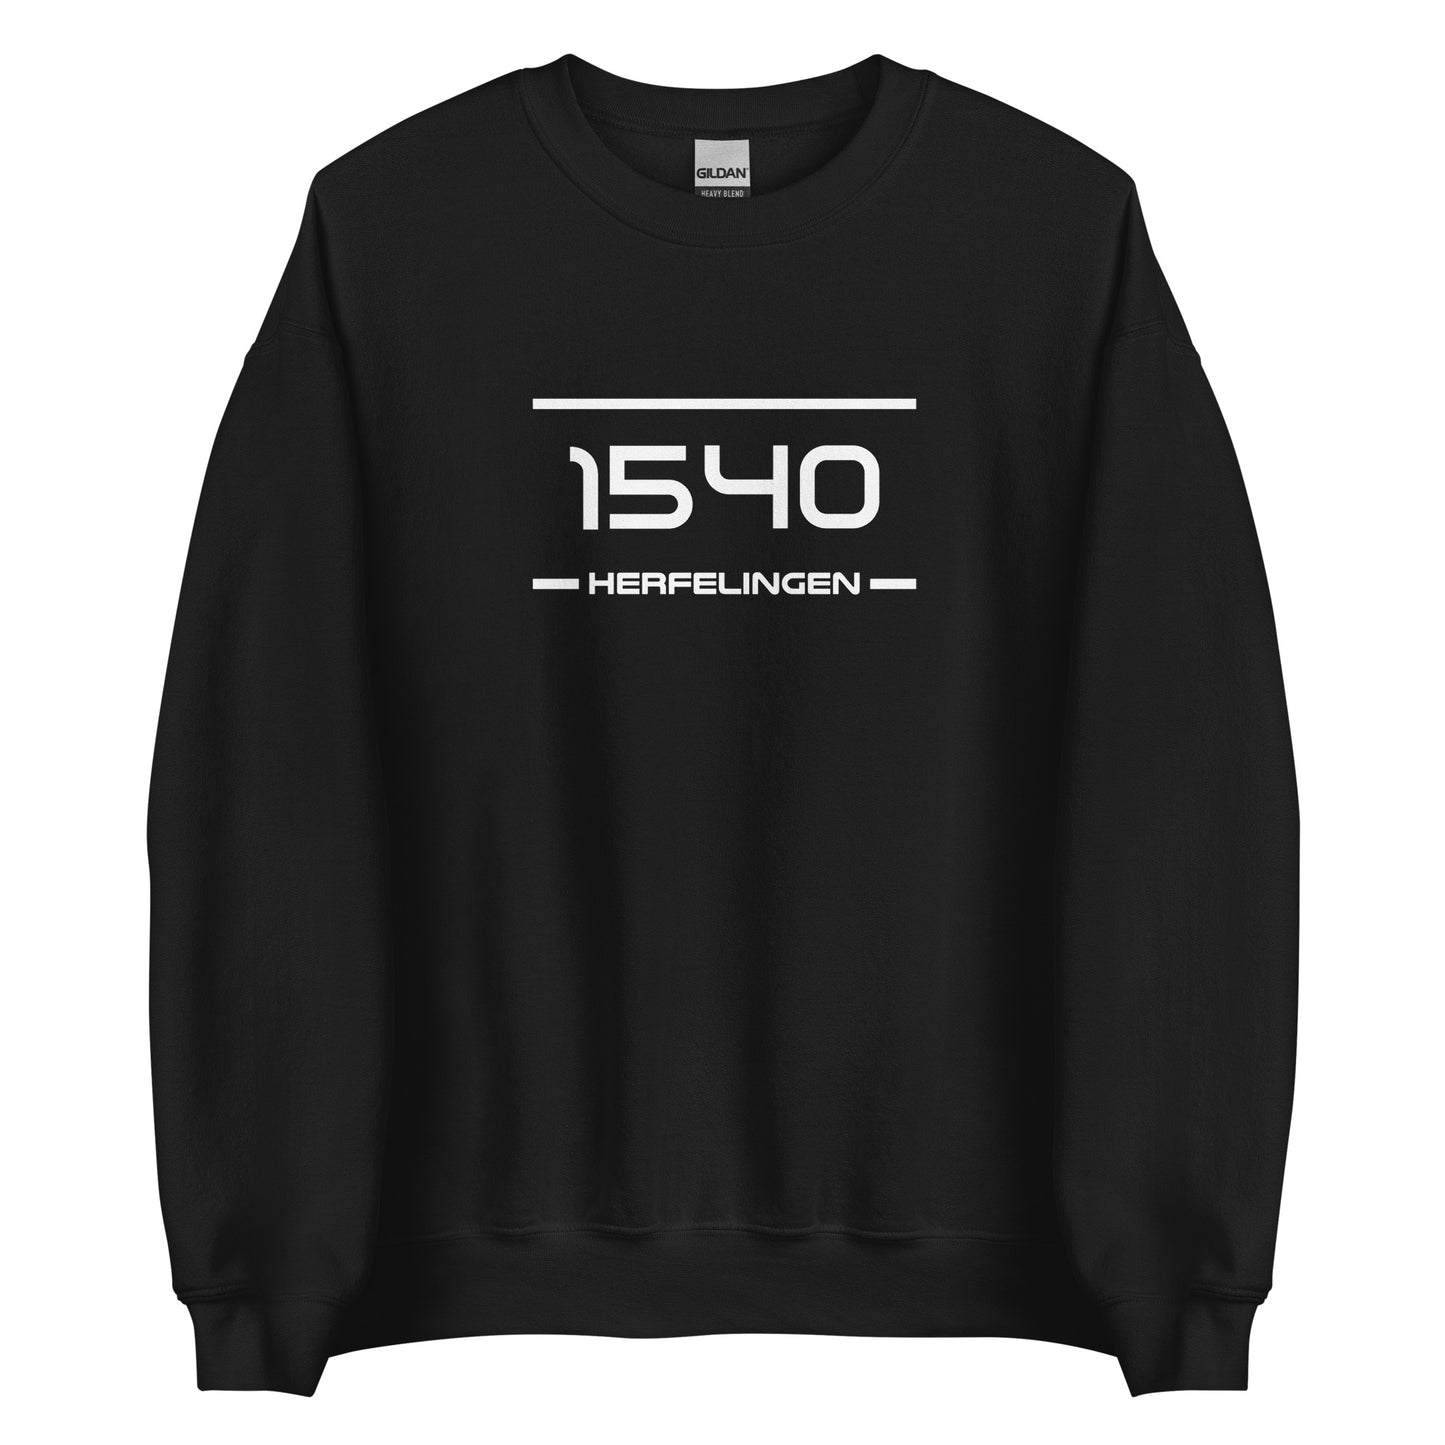 Sweater - 1540 - Herfelingen (M/V)